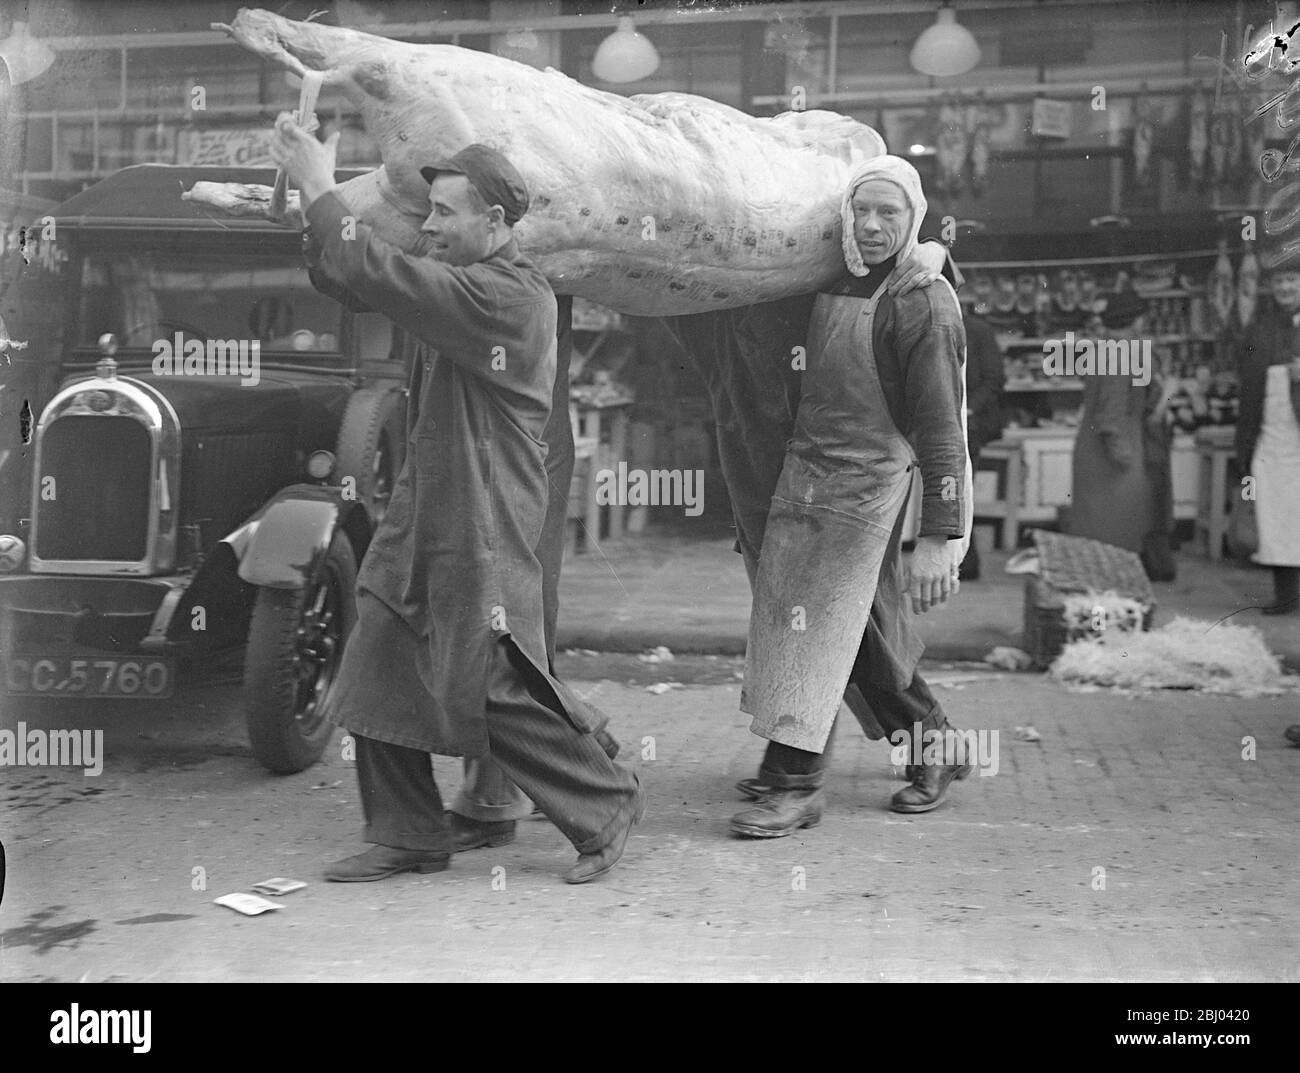 Ein Baron von Rindfleisch, wiegt 30 Stein ist auf dem Smithfield Markt auf dem Weg zum Lord Mayor Bankett angekommen, das am 9. November stattfindet. - Foto zeigt, Träger mit zwei gewichtigen Baron von Rindfleisch in Smithfield. - 5. November 1937 Stockfoto